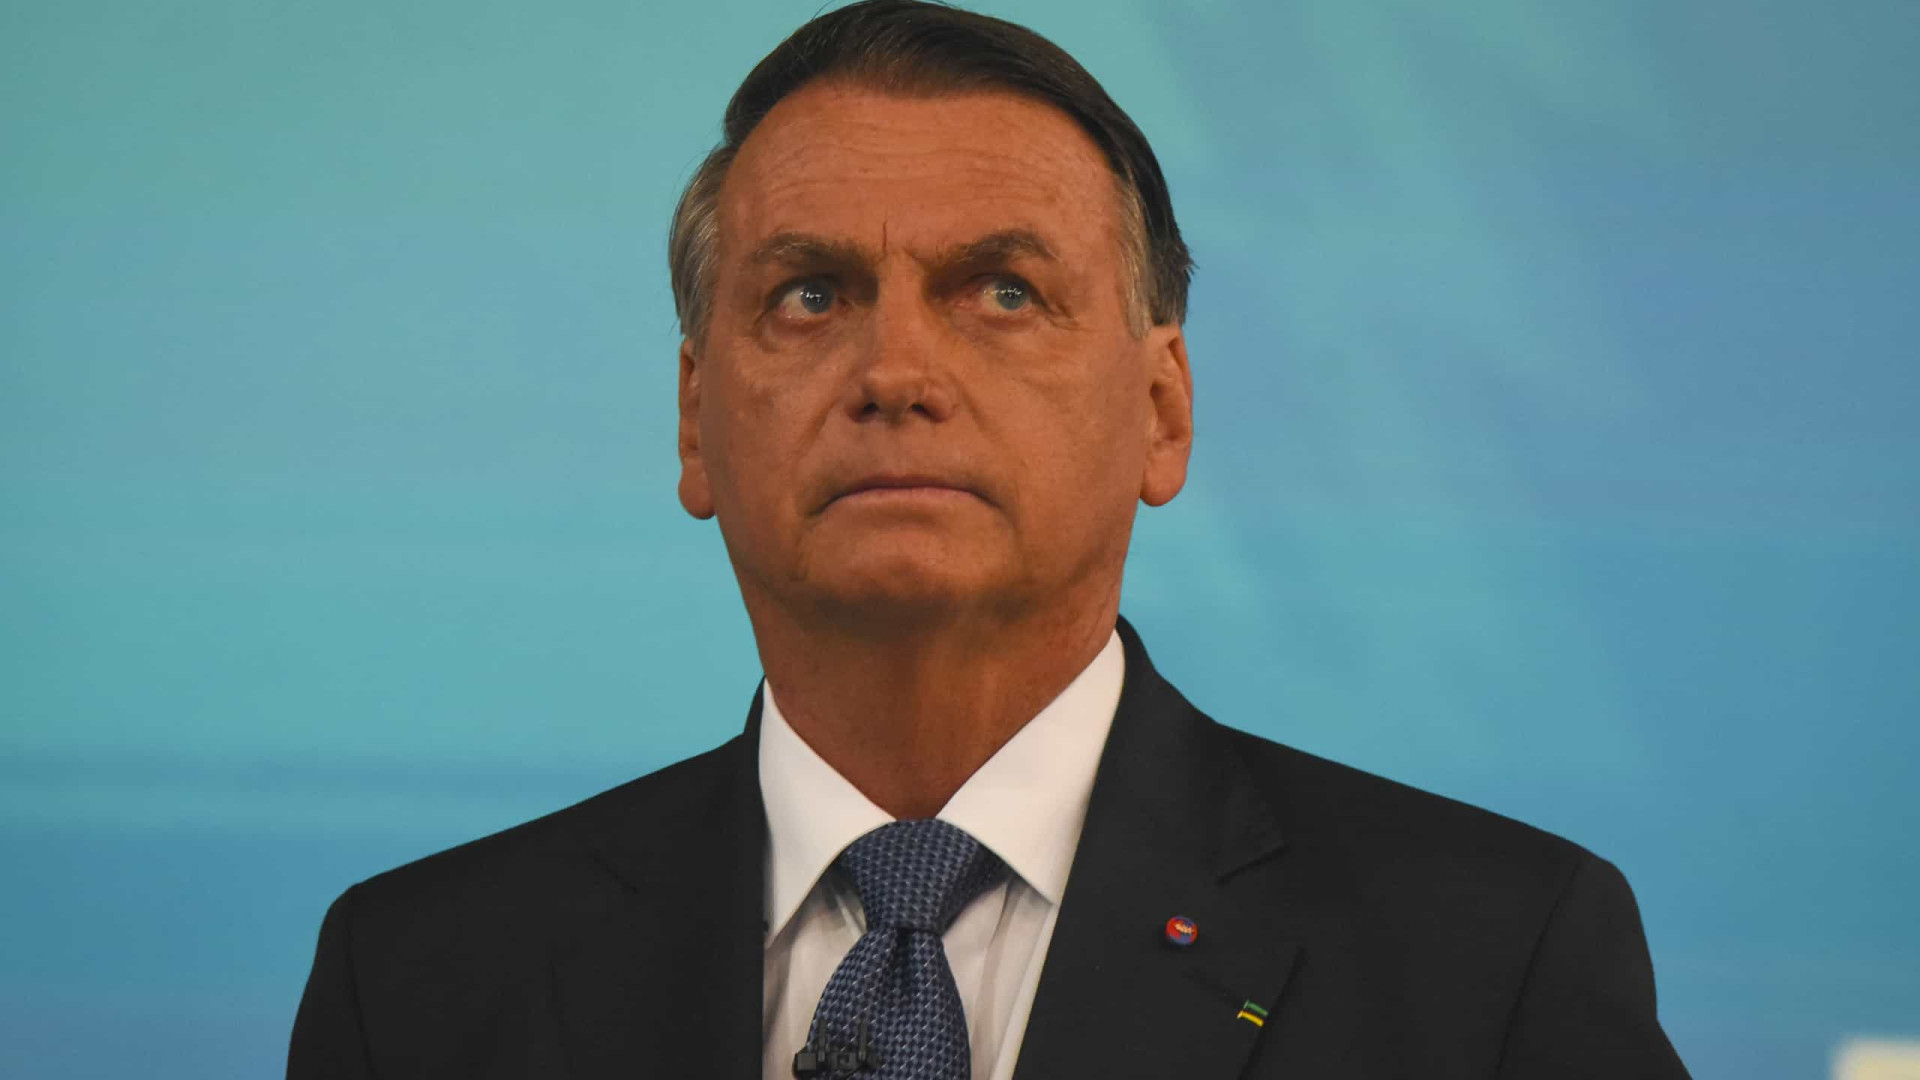 Bolsonaro deve responder por abuso de poder e poderá ficar inelegível